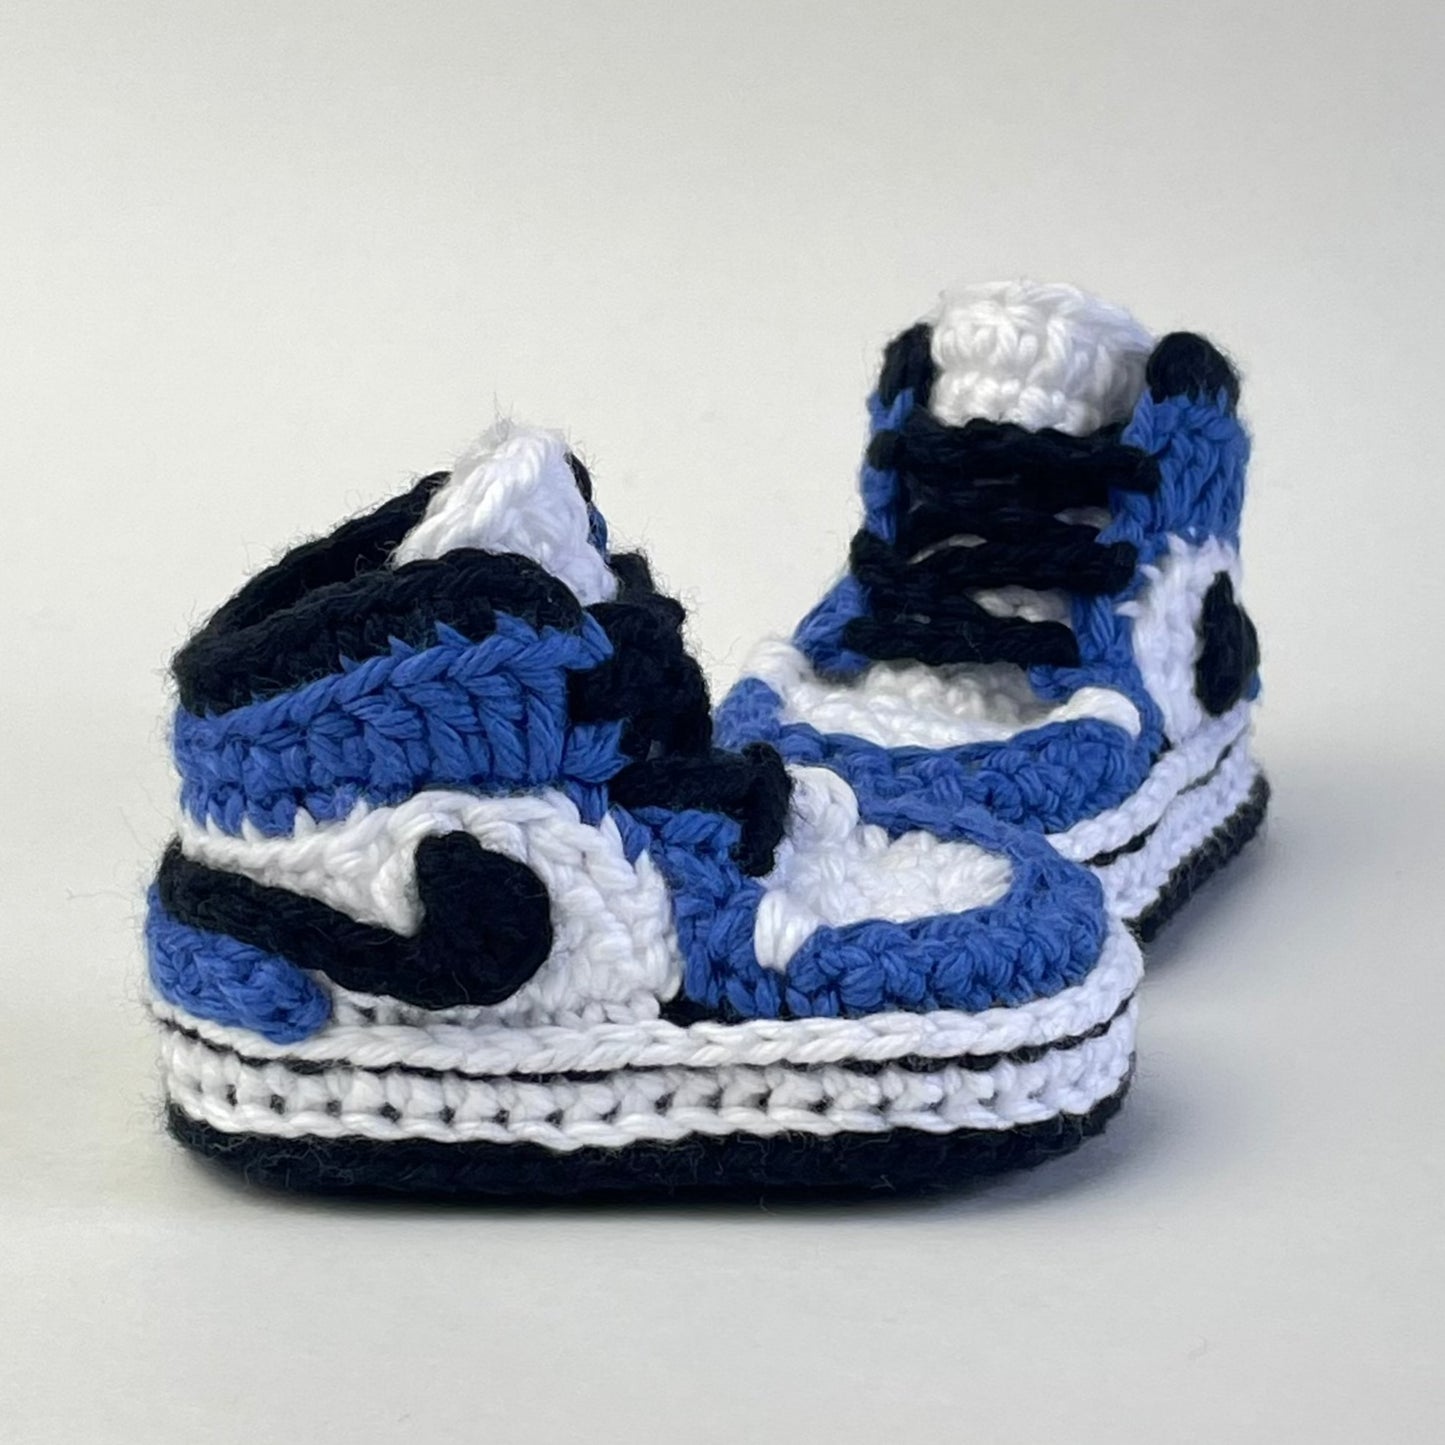 Baby Jordan Sneakers